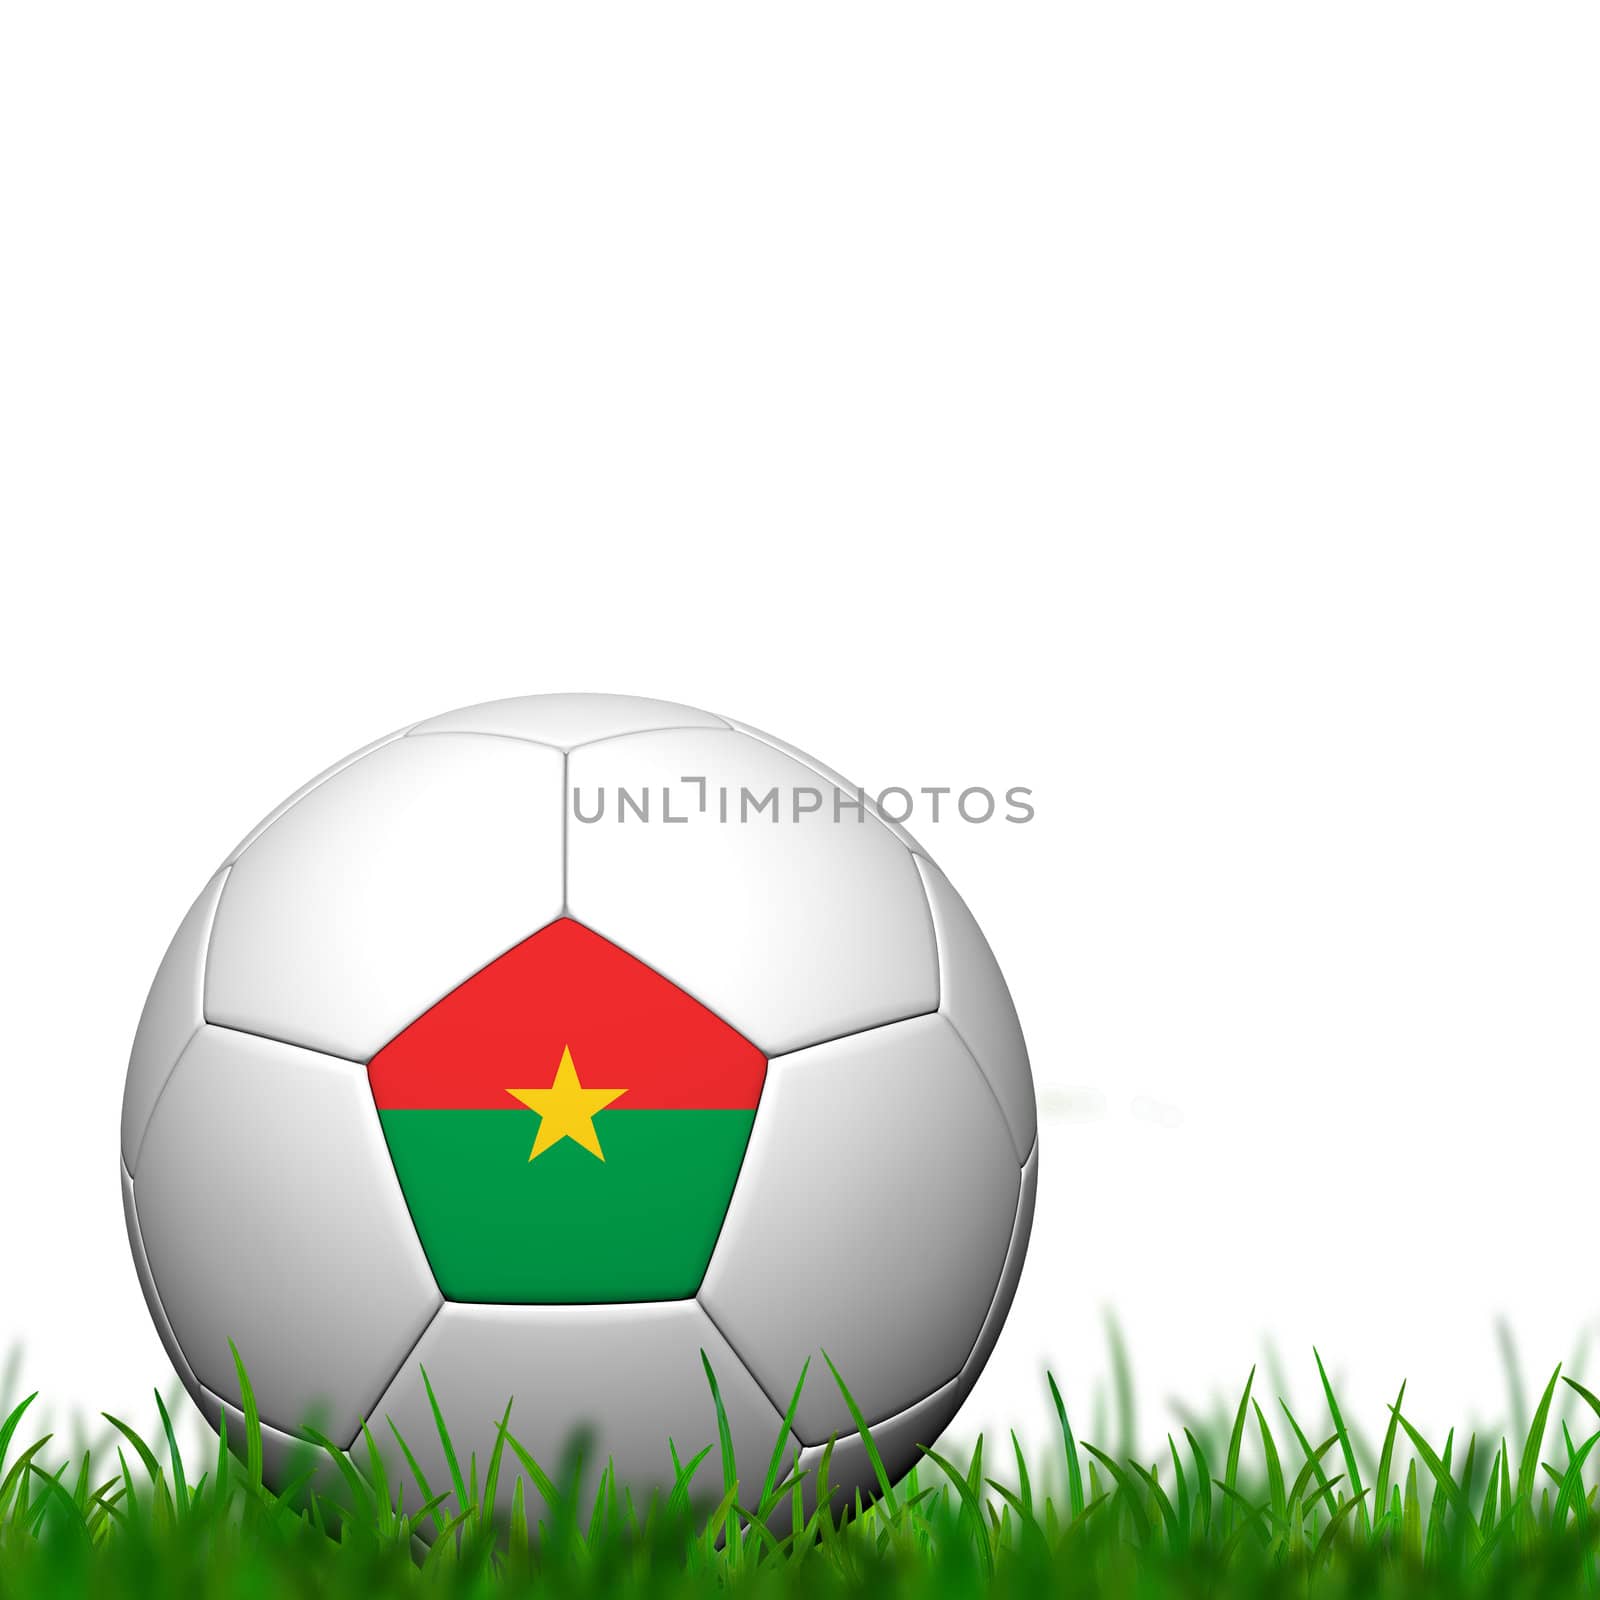 3D Soccer balll  Burkina Faso Flag Patter on green grass over white background